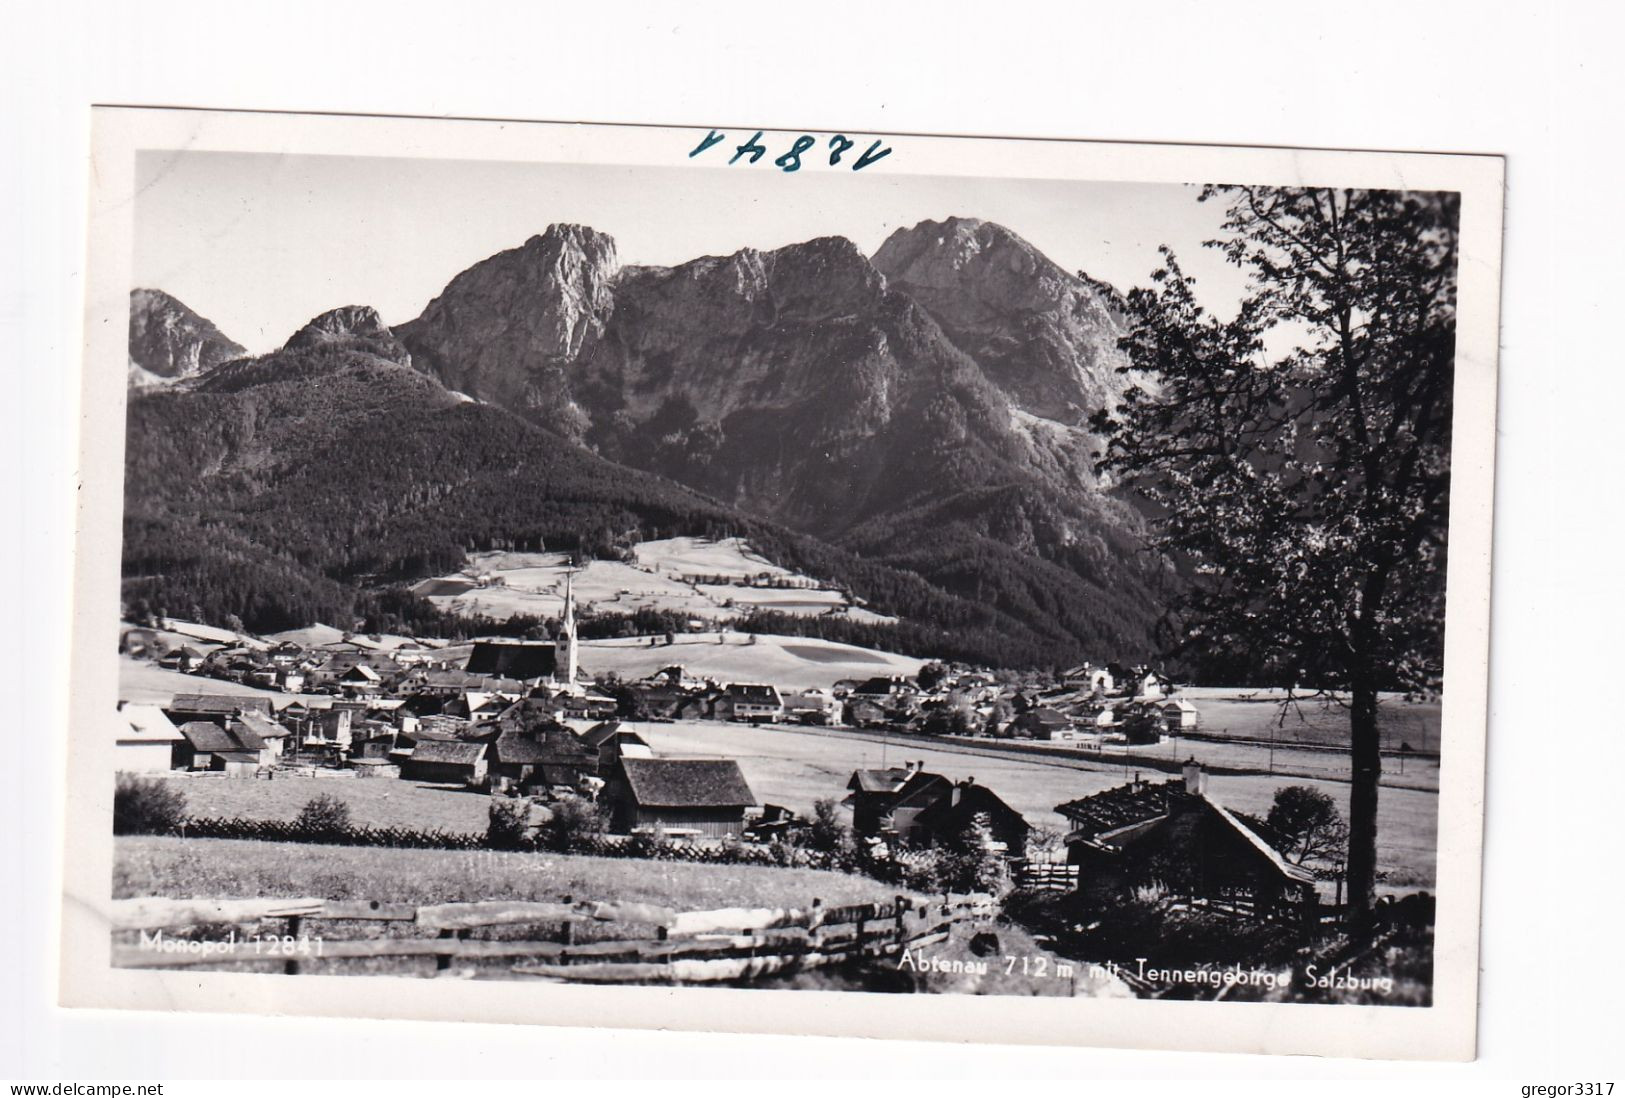 E5679) ABTENAU 712m Mit Tennengebirge - Salzburg - Holzhäuser Im Vordergrund ALT! - Abtenau